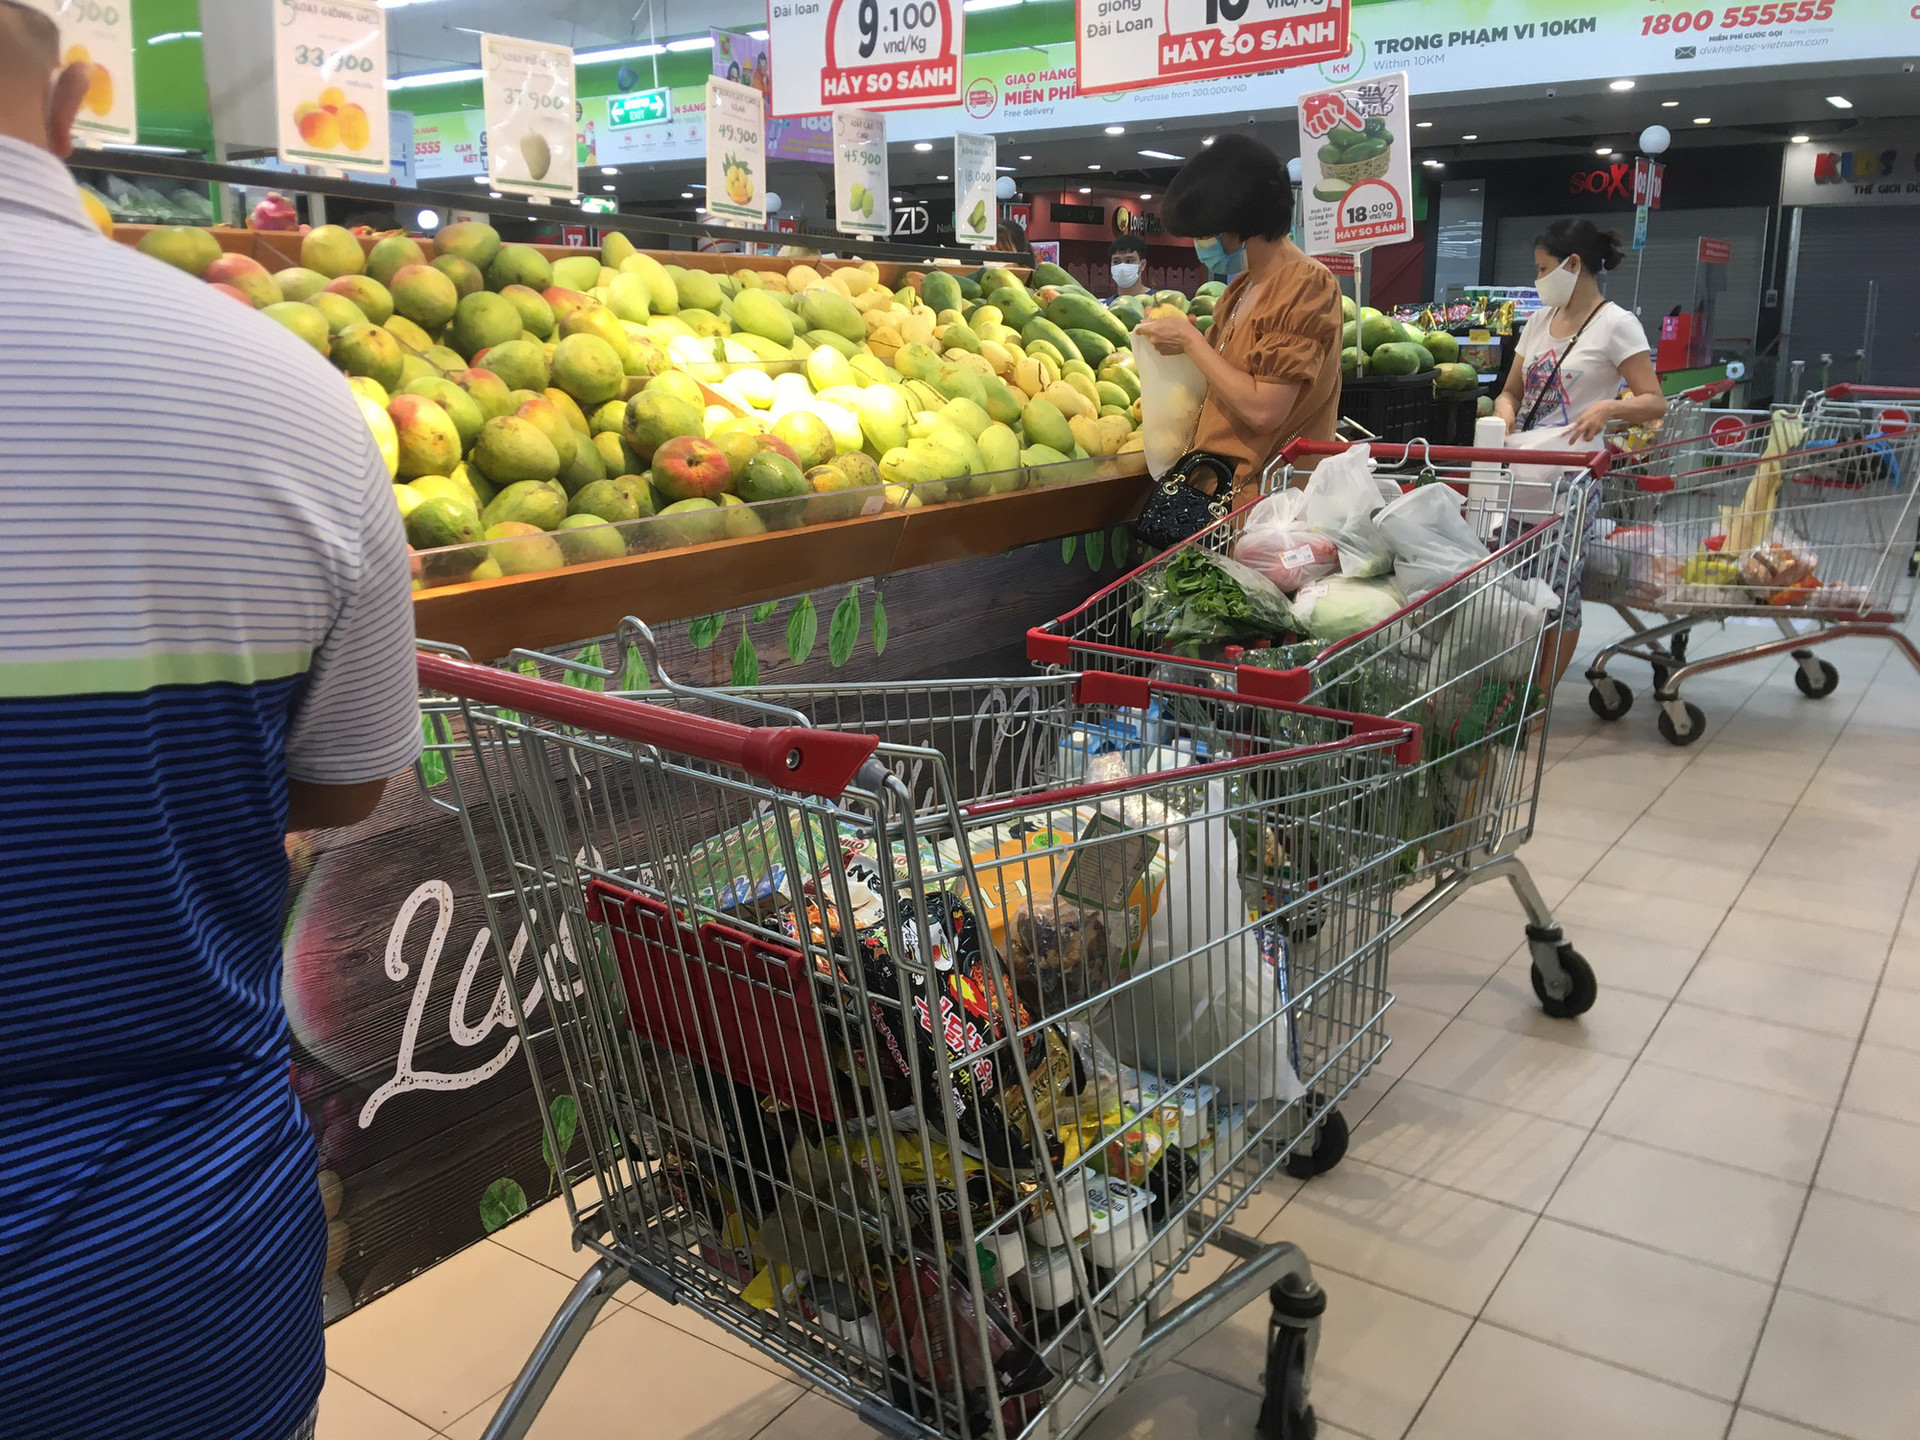 Hà Nội: Người dân đi chợ 1 lần trong tuần để hạn chế việc ra ngoài - Ảnh 7.